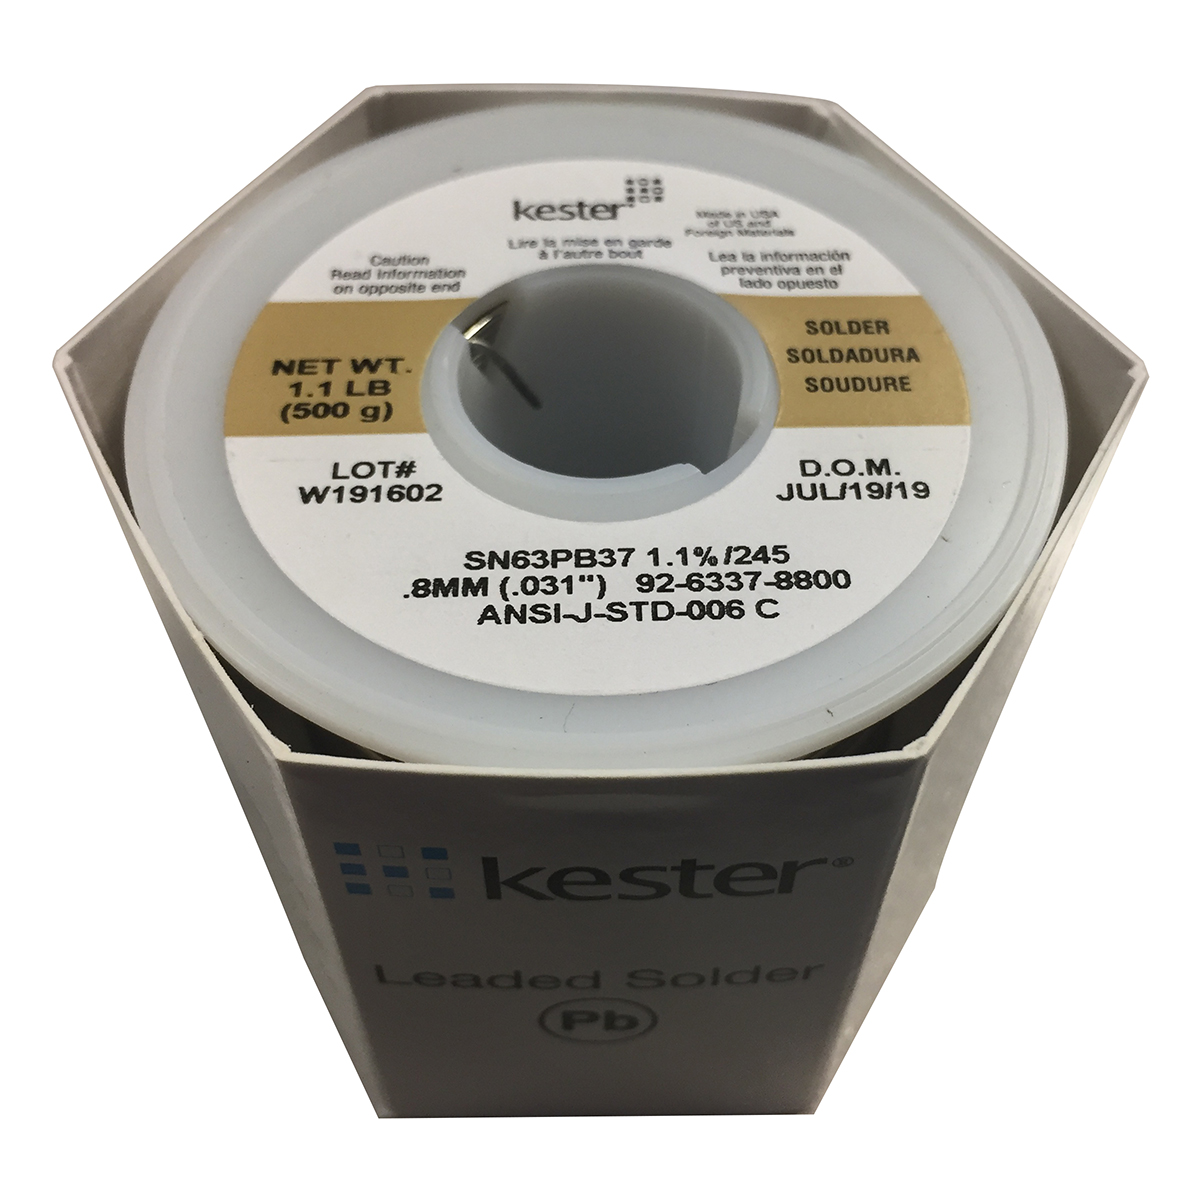 Kester 245 - Безотмывочный трубчатый припой с флюсом